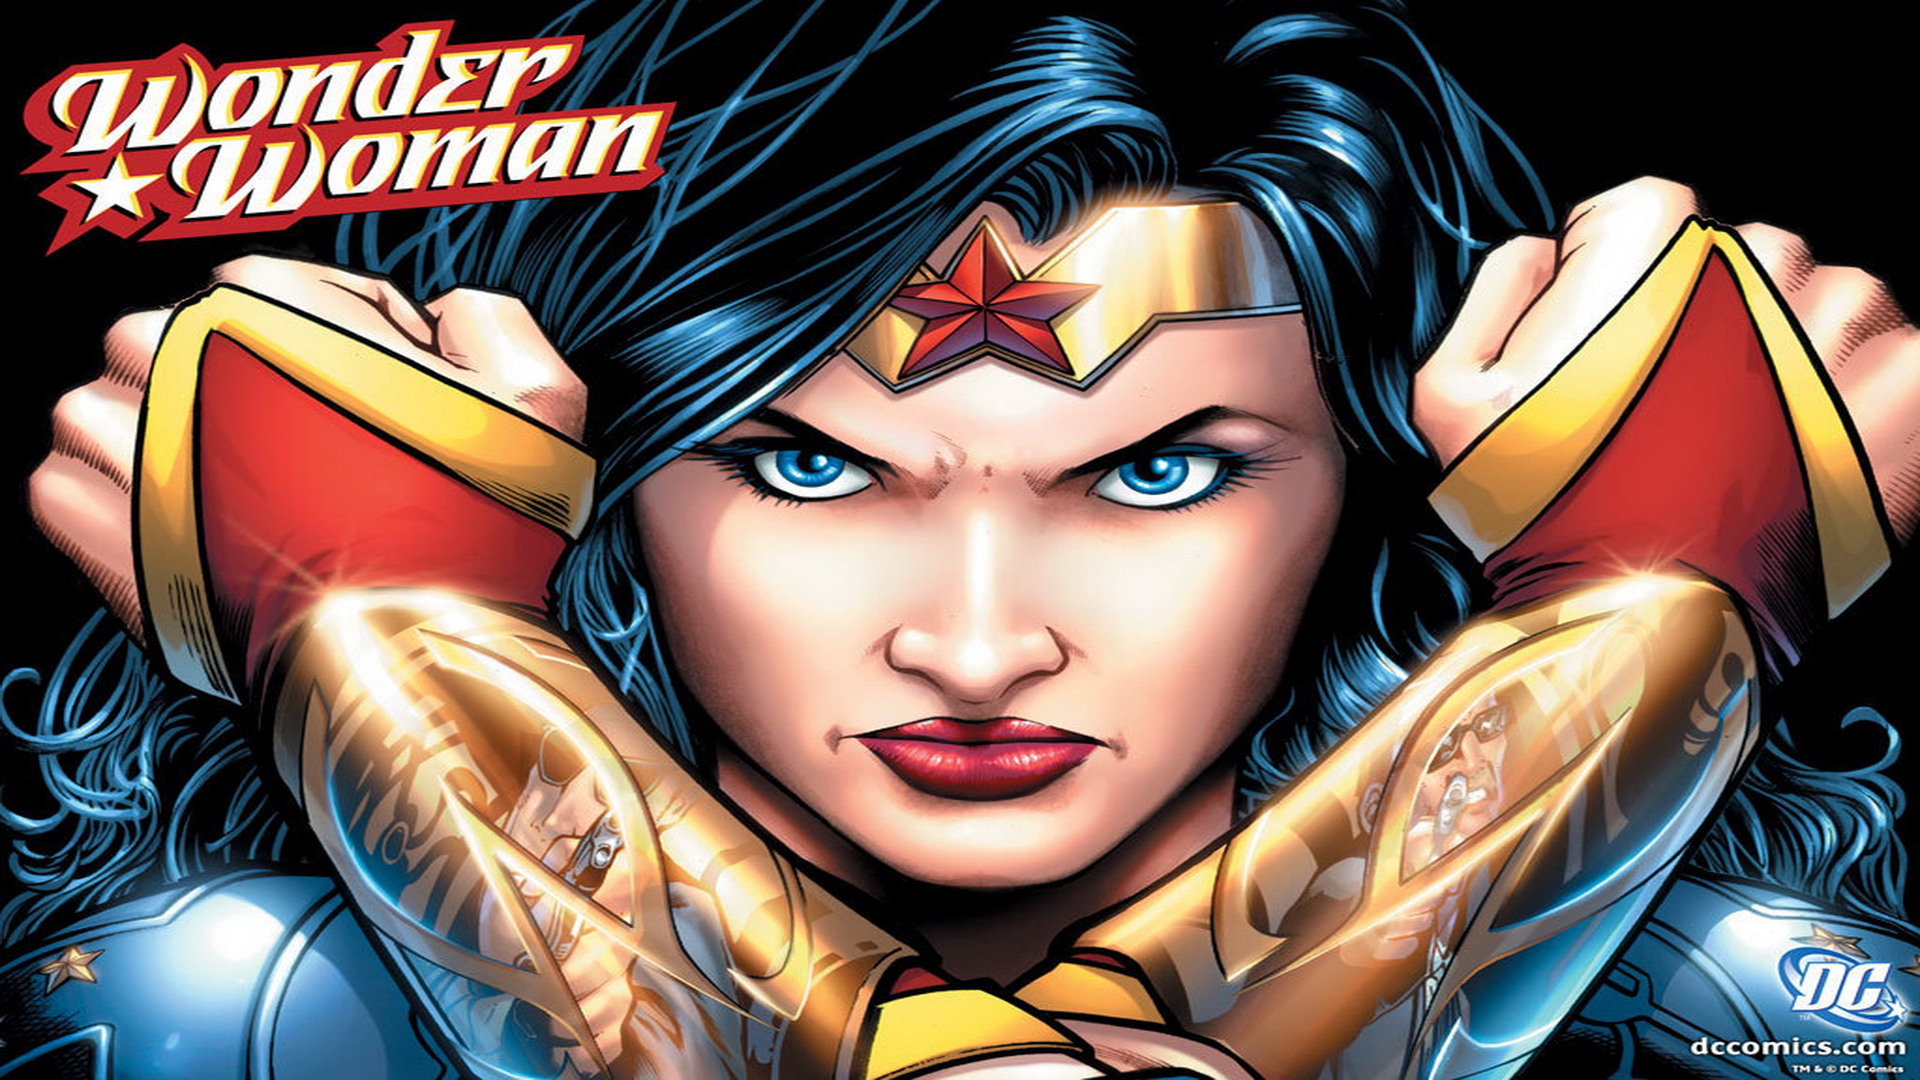 Wonder Woman dc comics 17997940 1024 768 Wallpaper HD Desktop